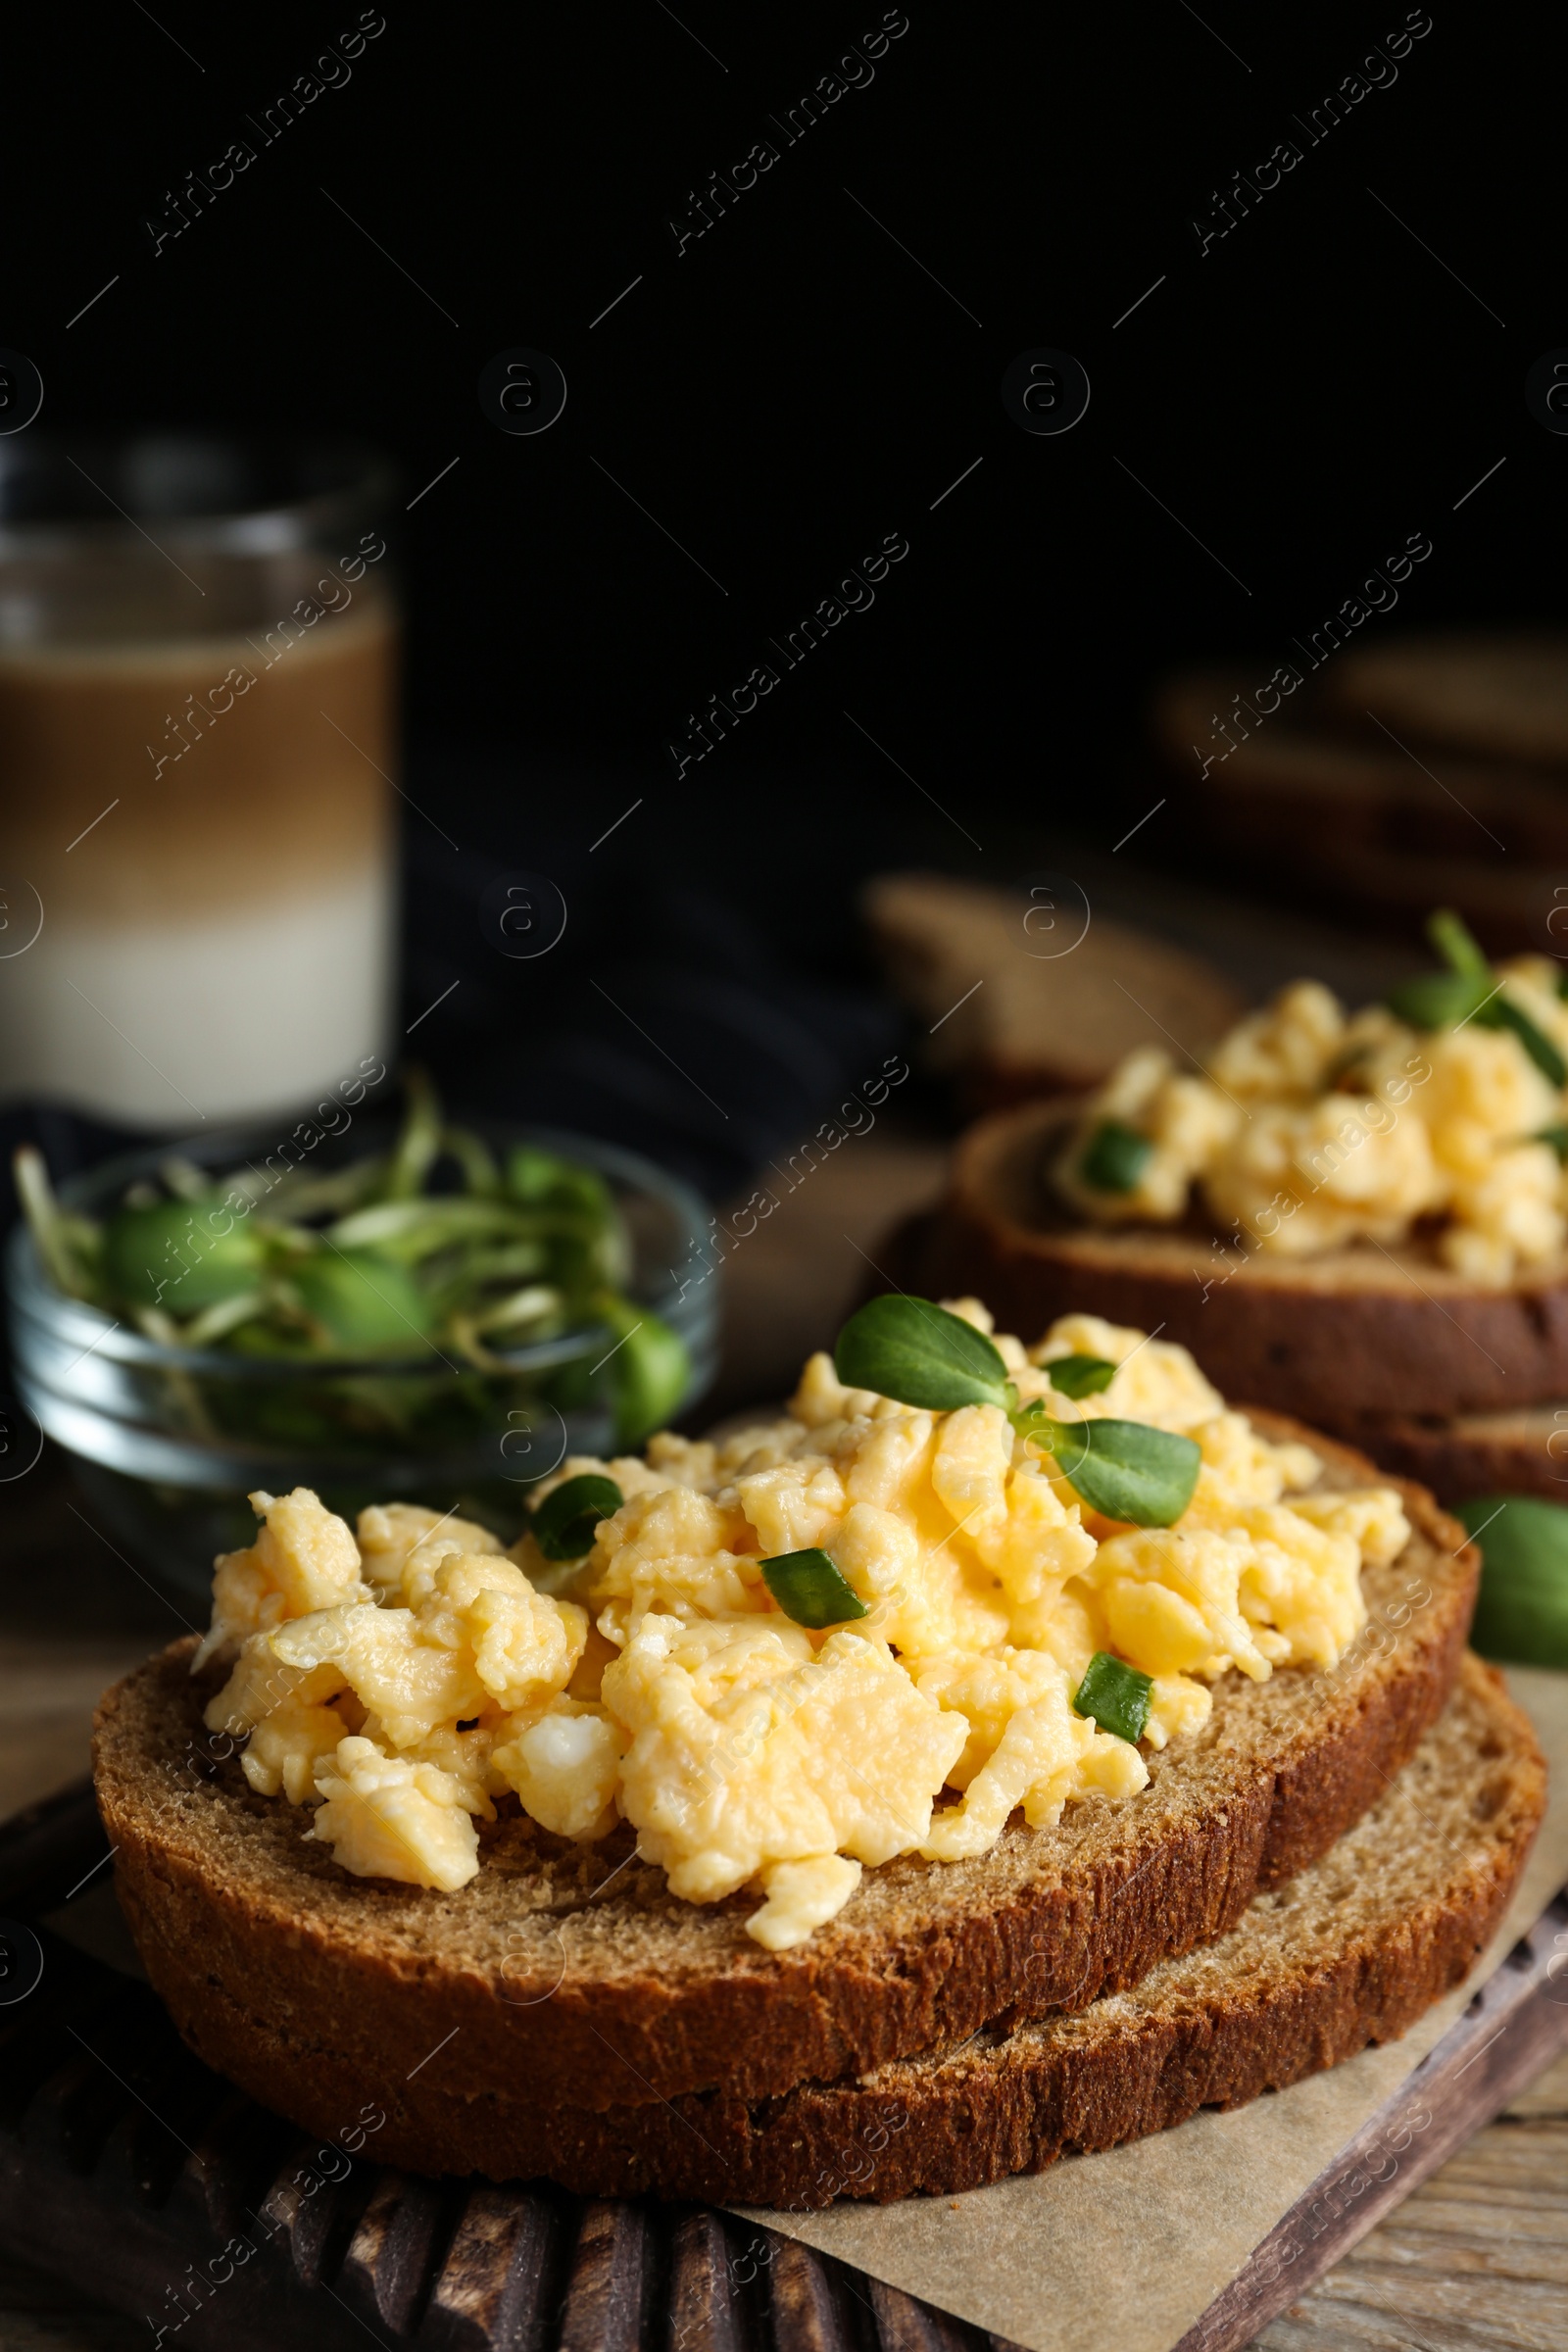 Photo of Tasty scrambled egg sandwich on wooden board